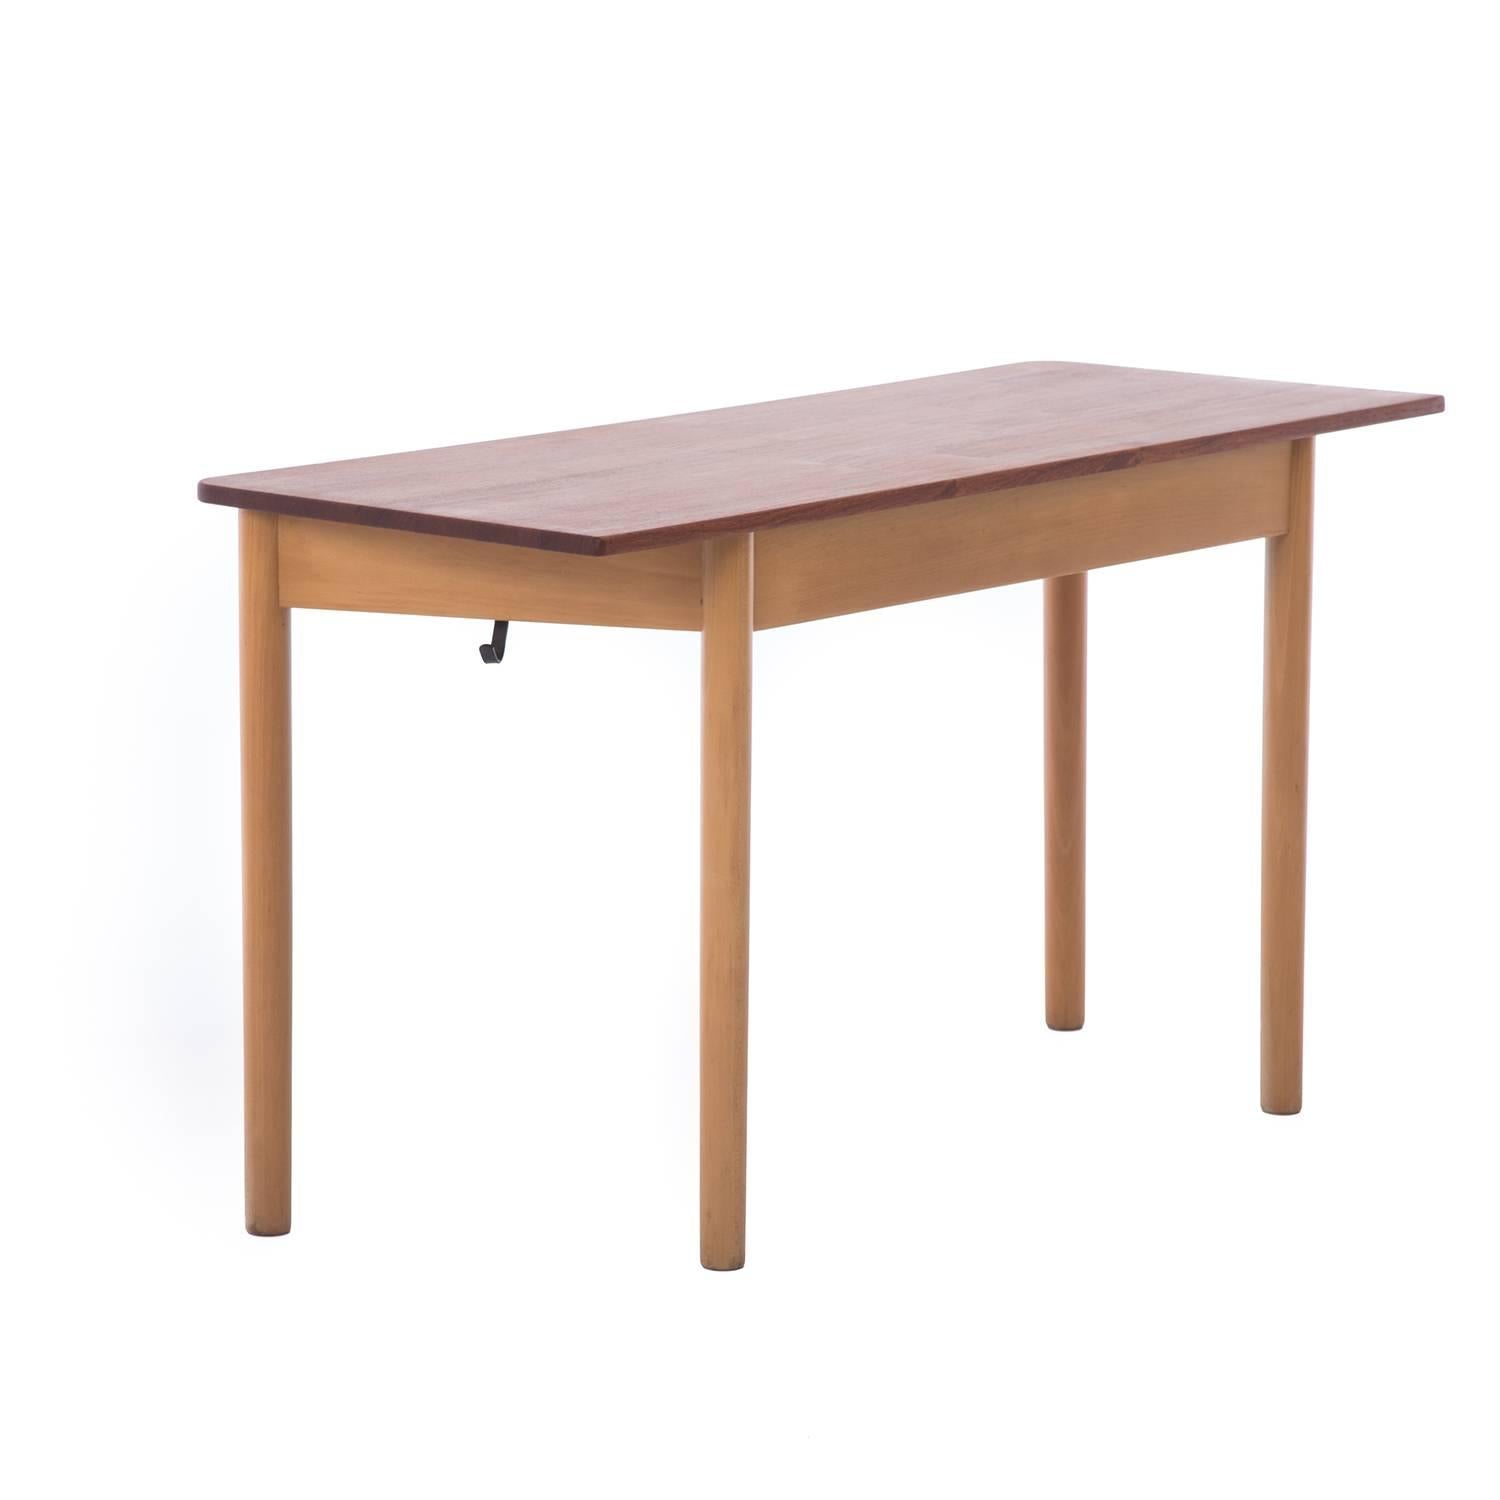 Scandinavian Modern Danish Modern School Desk Console Table by Arne Jacobsen